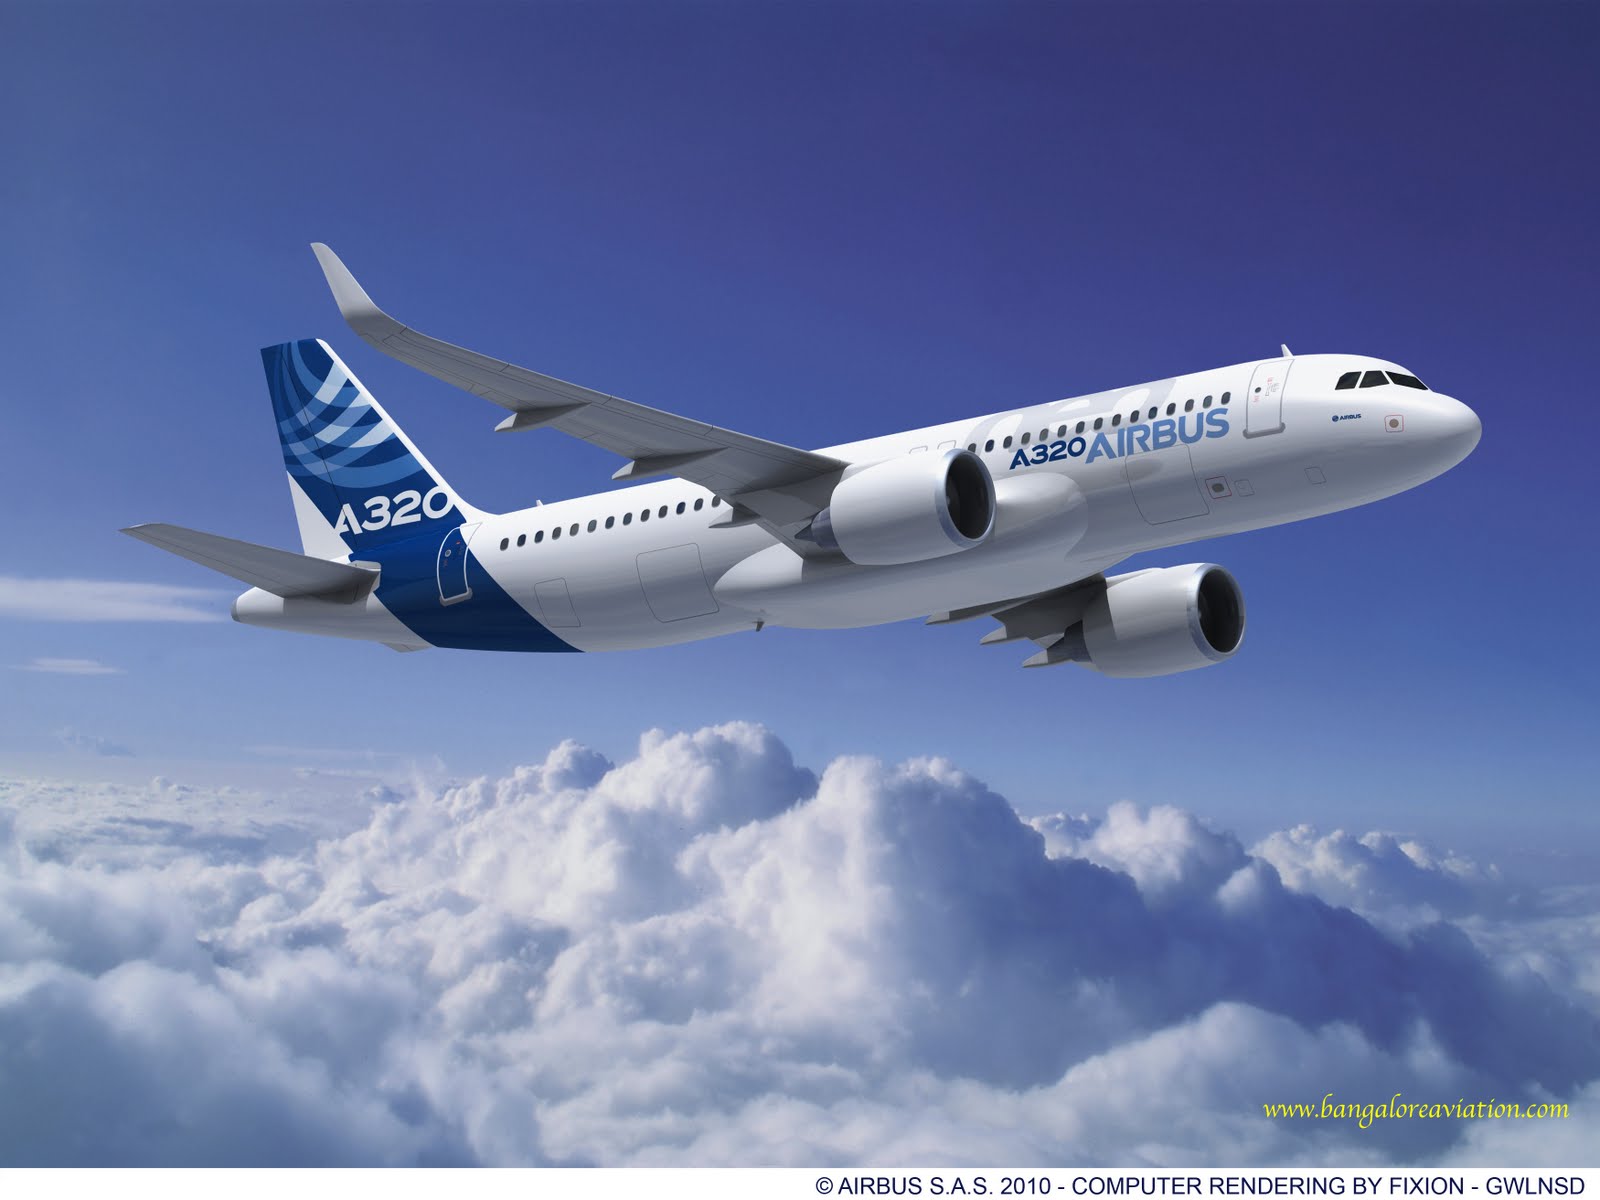 Airbus A320neo A Runaway Success At The Paris Air Show Pressure